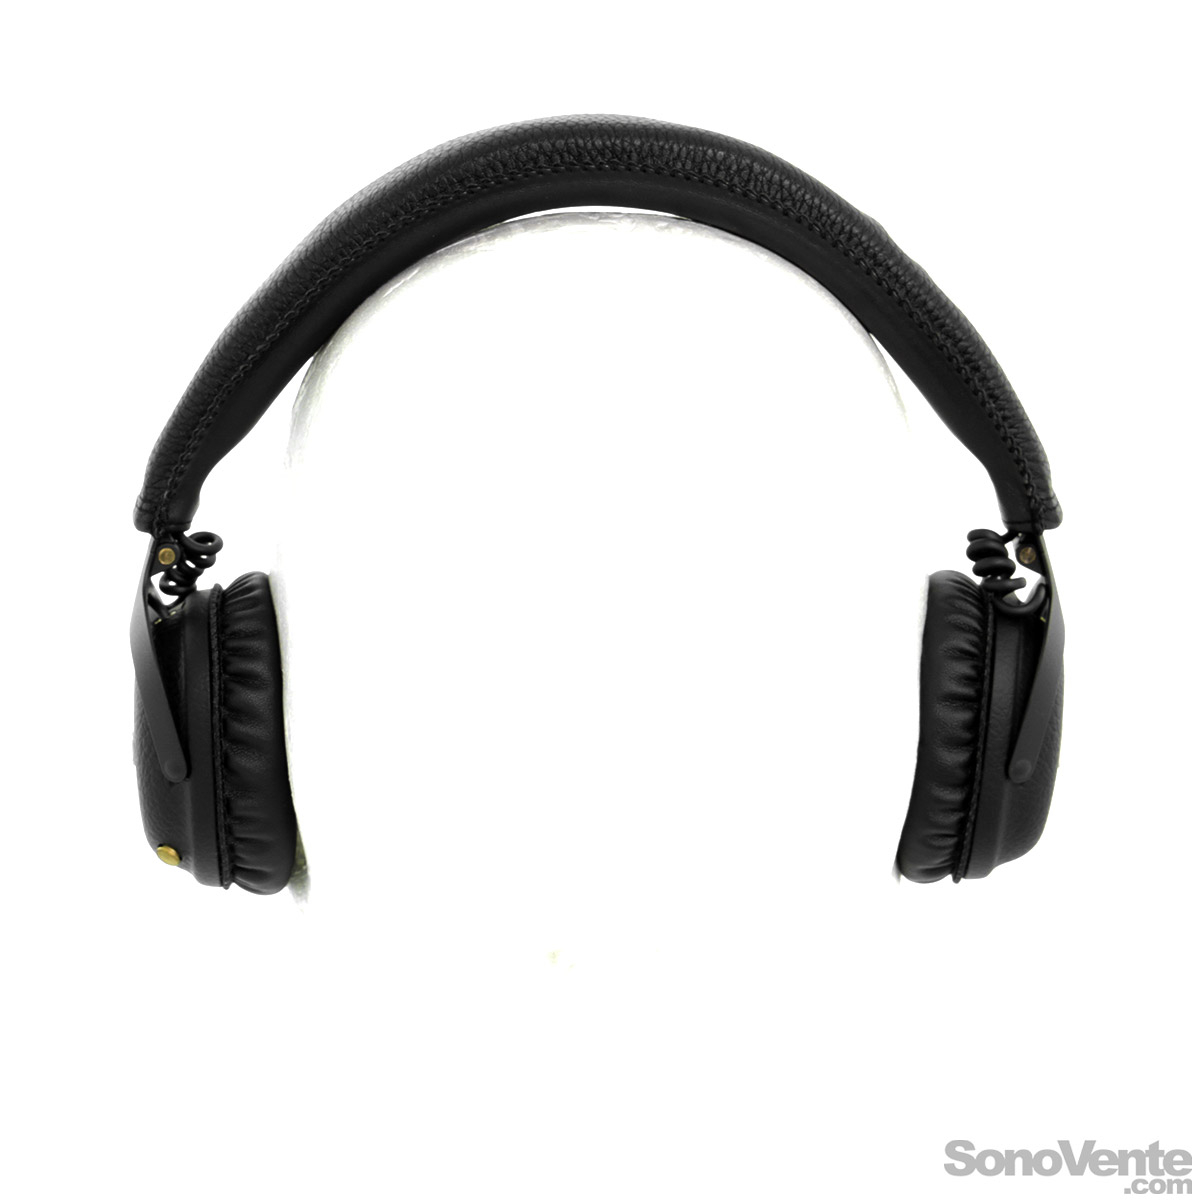 Marshall Mid Bluetooth Black - IPhone / IPod / MP3 Headphone 